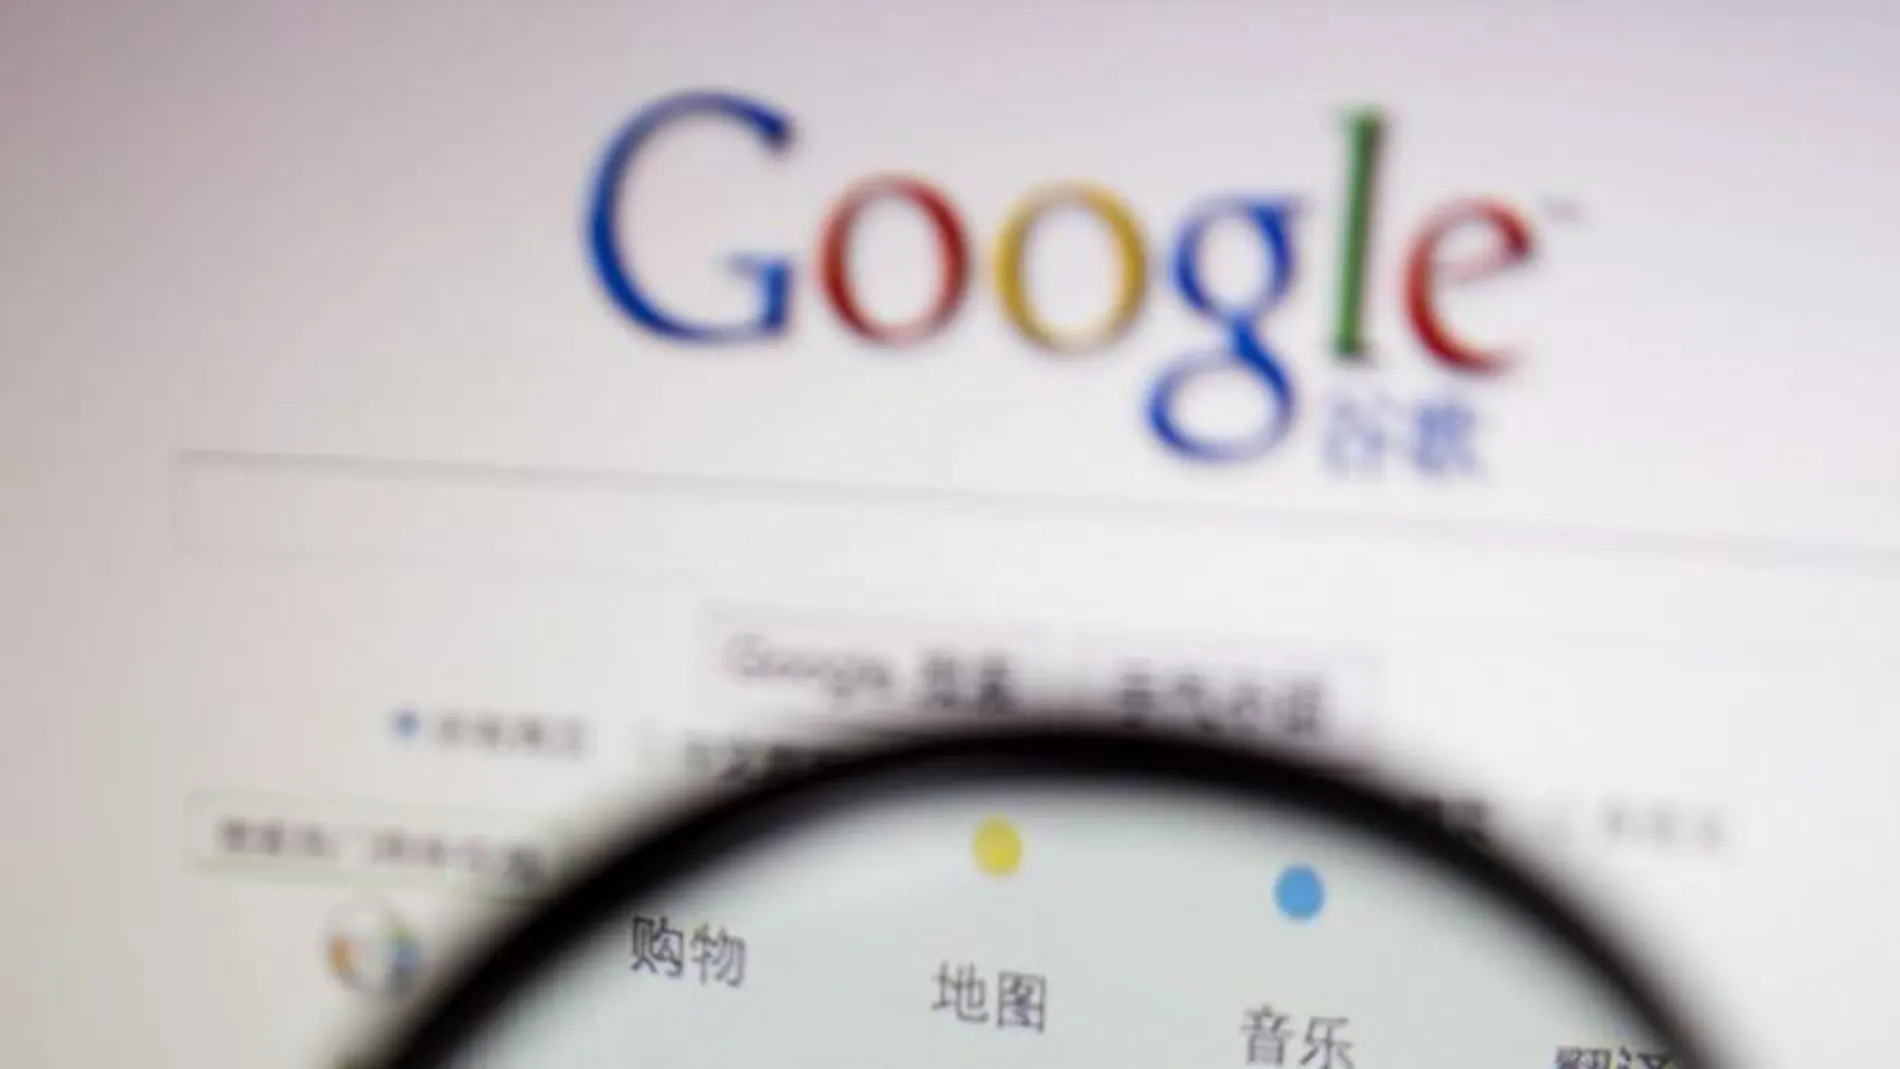 Google ha sufrido en numerosas ocasiones la censura en China, como cuando, con motivo del aniversario de la masacre de Tianamen, fue bloqueado